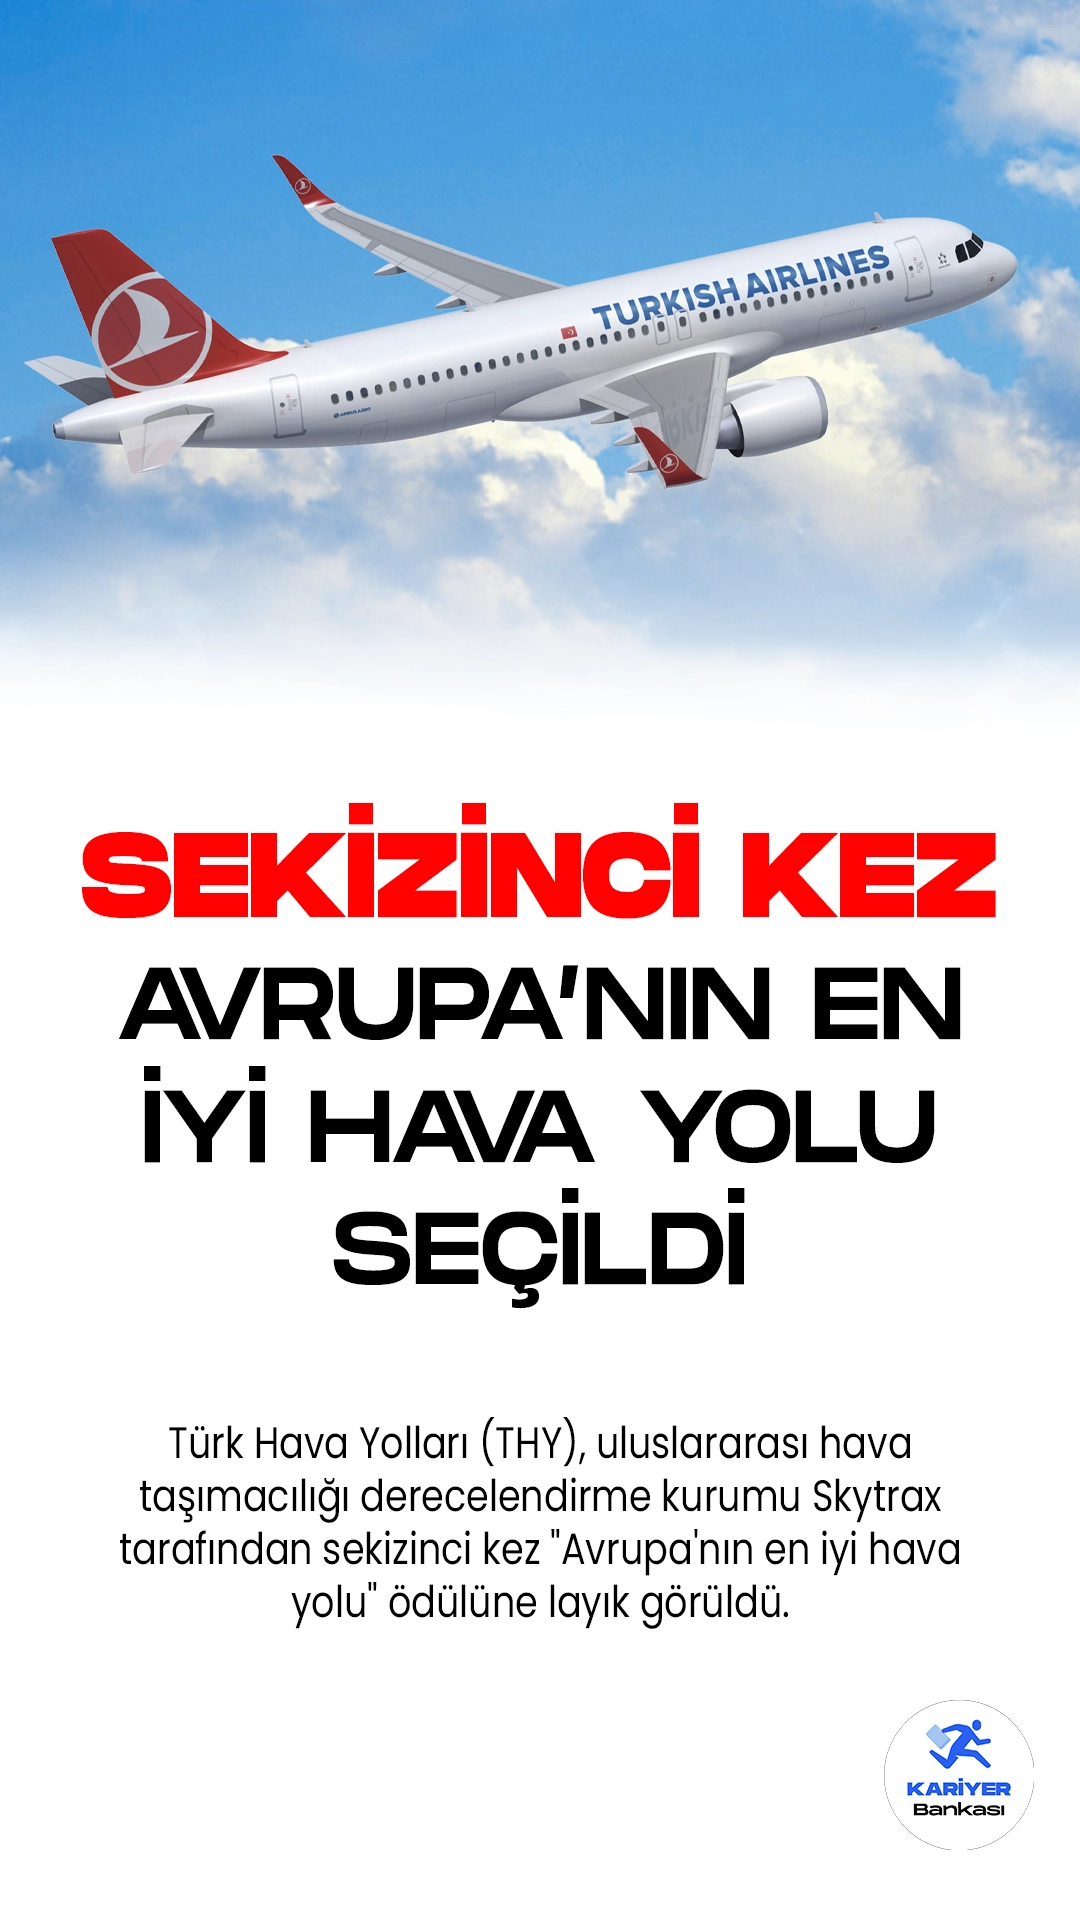 Türk Hava Yolları (THY), Skytrax tarafından sekizinci kez "Avrupa'nın En İyi Hava Yolu" seçildi.Türk Hava Yolları (THY), uluslararası hava taşımacılığı derecelendirme kurumu Skytrax tarafından sekizinci kez "Avrupa'nın en iyi hava yolu" ödülüne layık görüldü.